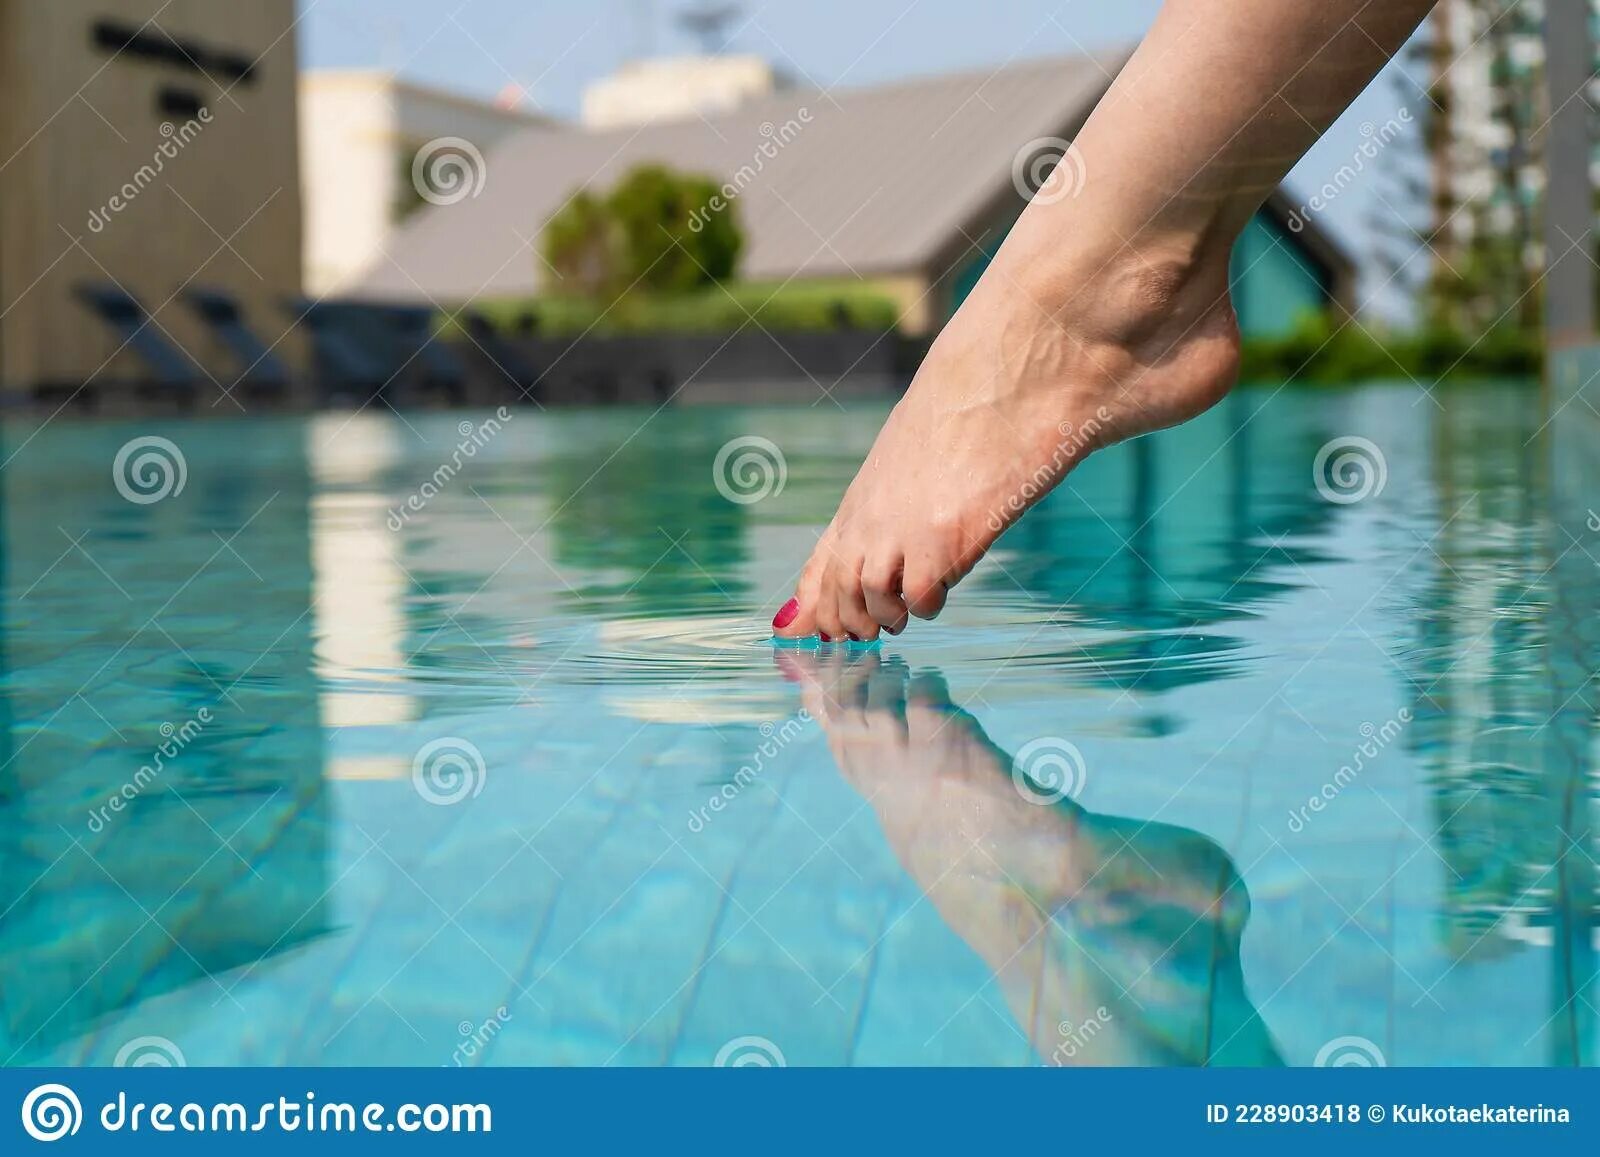 Дерево ногами в воде. Ноги в бассейне. Нога касается воды. Стопы девочек в бассейне.